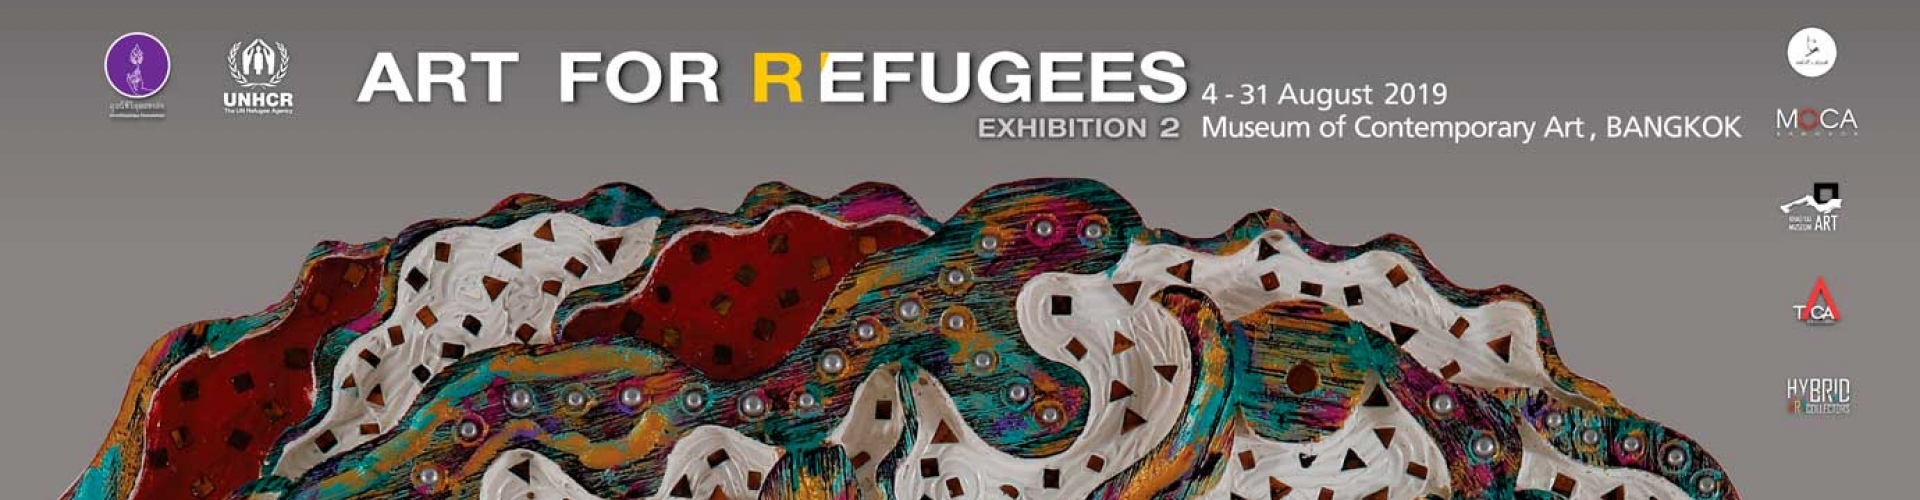 UNHCR ร่วมกับพระเมธีวชิโรดม (ท่านว.วชิรเมธี) จัดงานนิทรรศการ “ศิลปกรรมเพื่อผู้ลี้ภัย ครั้งที่ 2” ระดมทุนมอบที่พักพิงแก่ผู้ลี้ภัยทั่วโลก